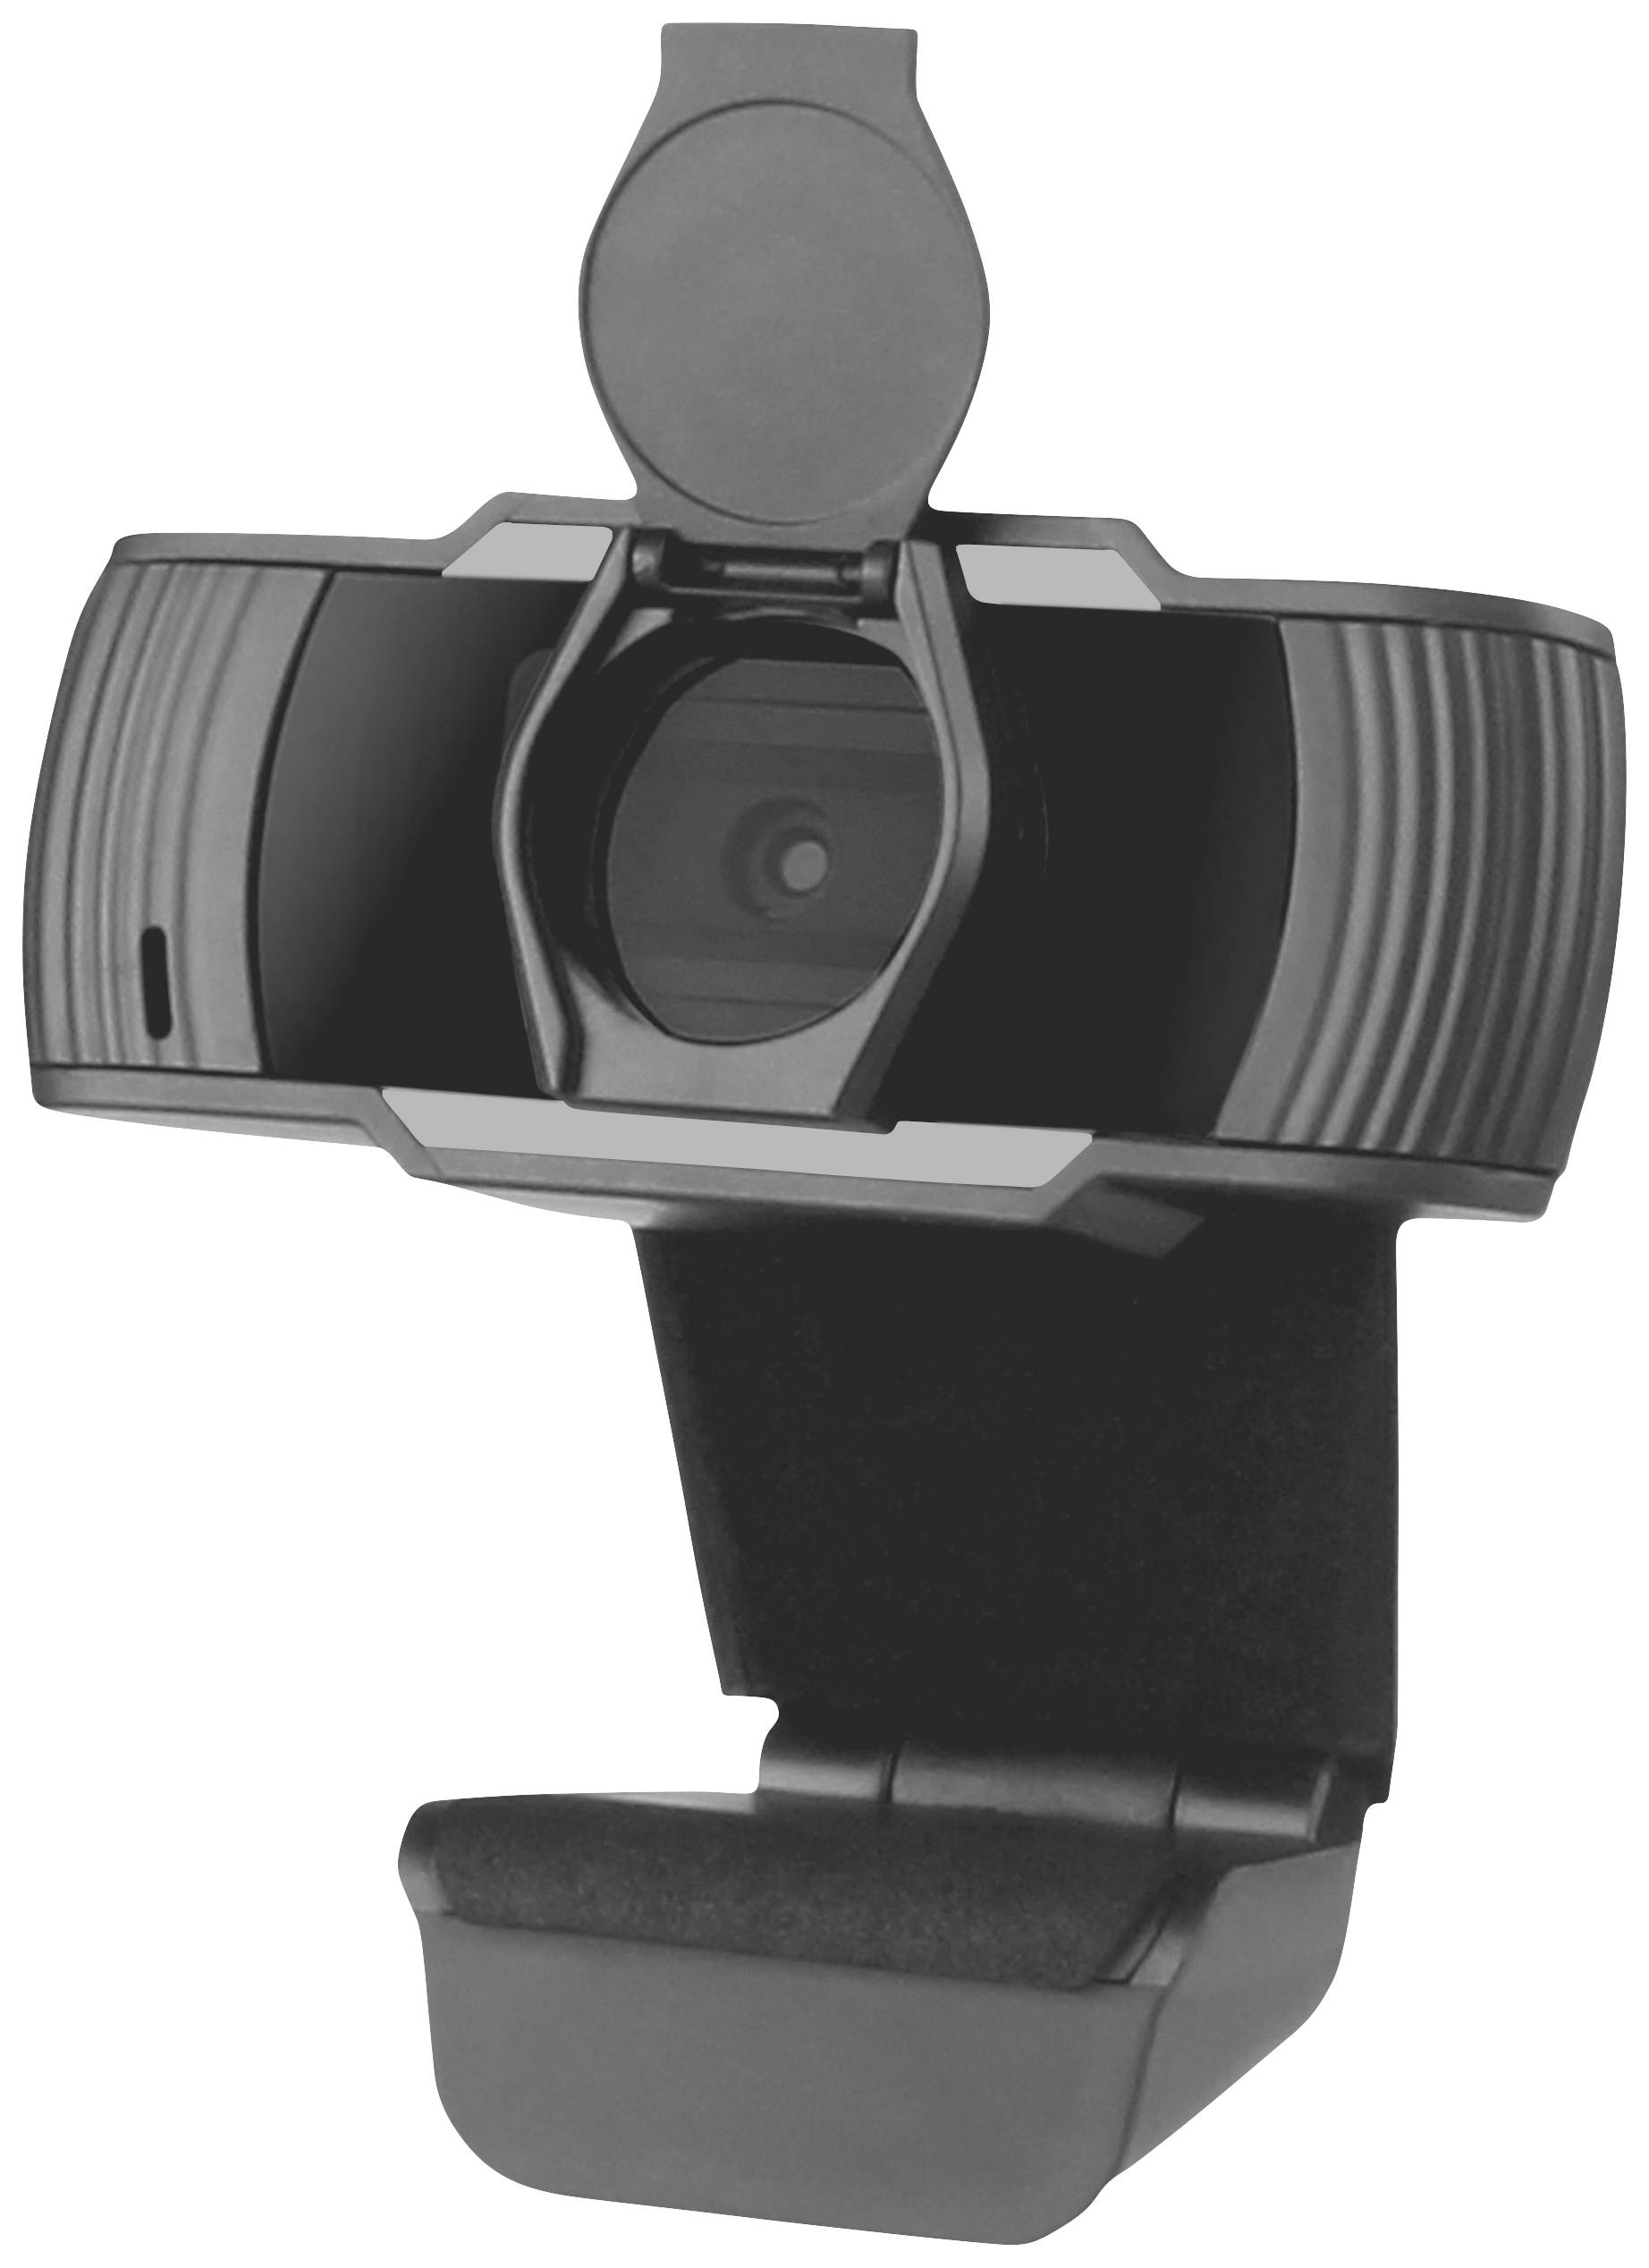 SPEED-LINK Webcam RECIT, 720p HD, schwarz retail